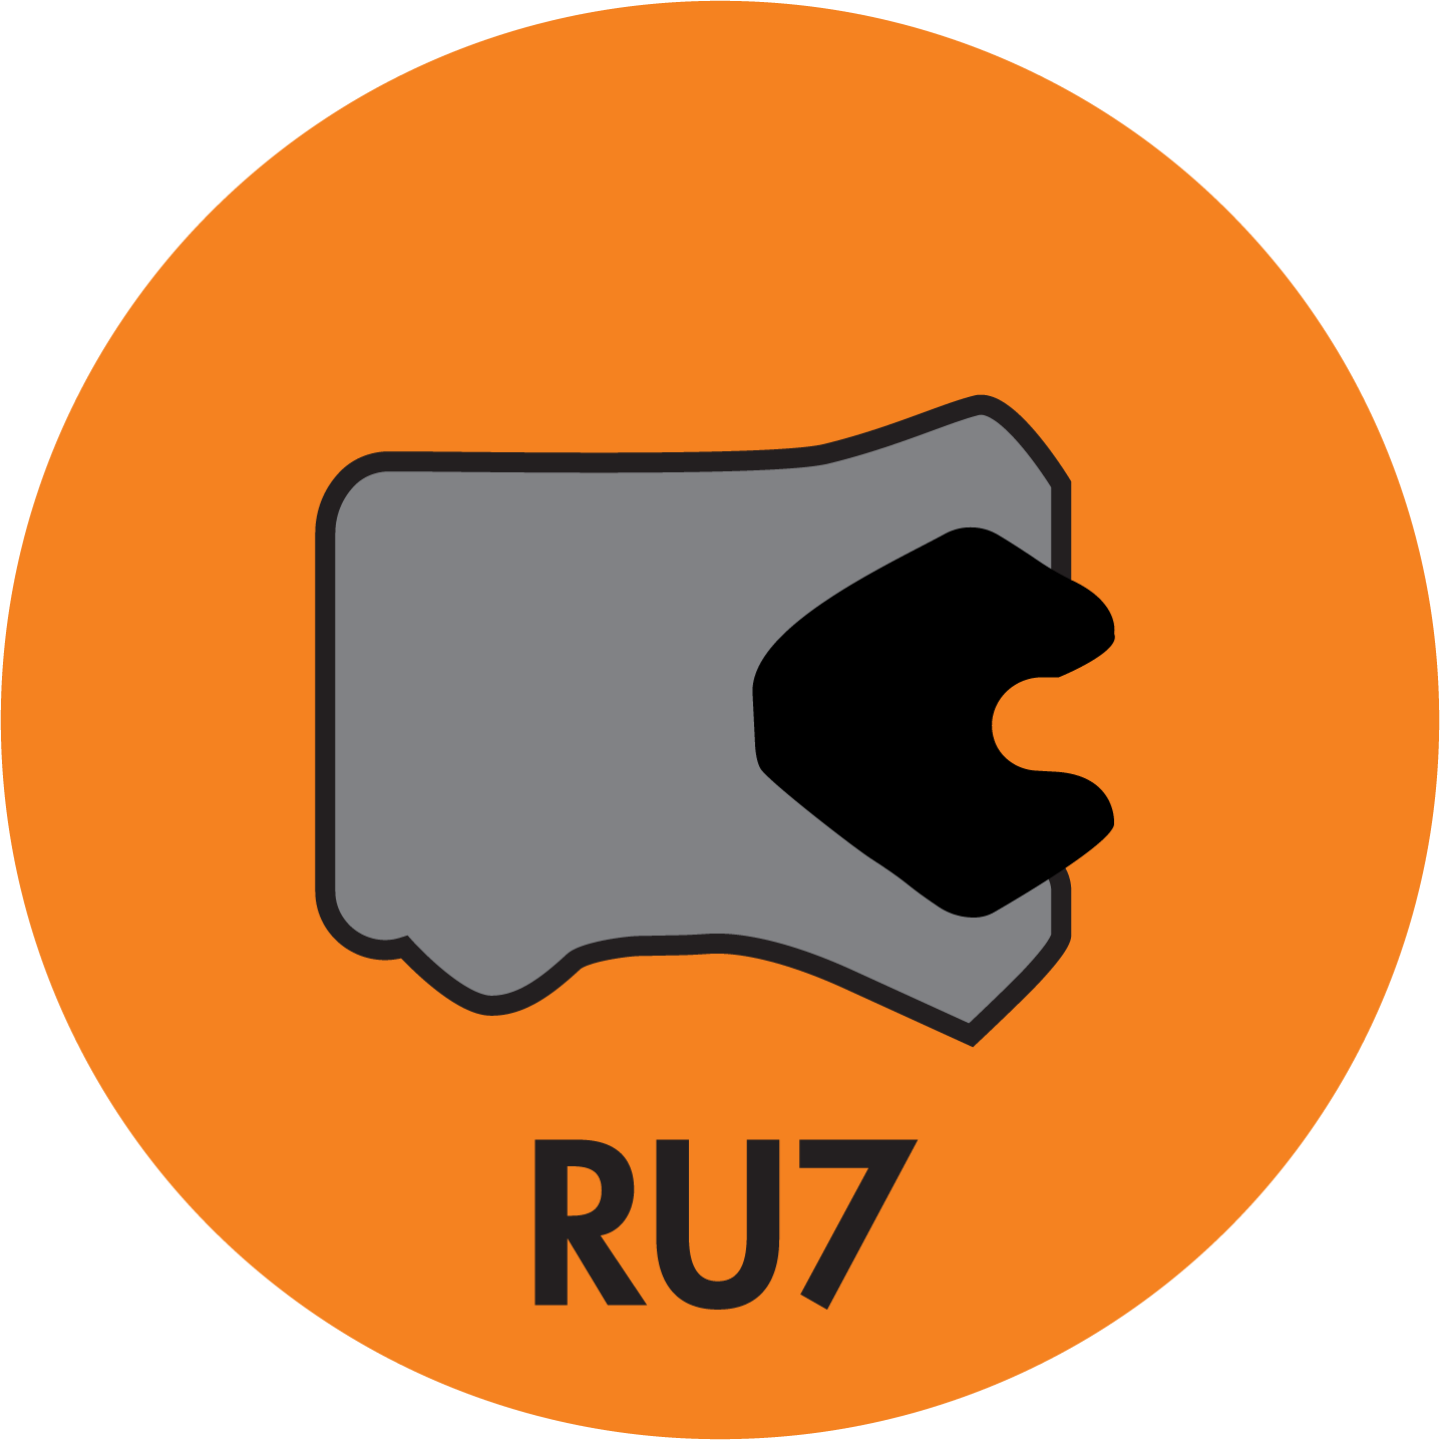 RU7 TWIN LIP ROD (LOADED) U-CUP (AU+NBR) - RU7-25003500-375-P92E Image 1